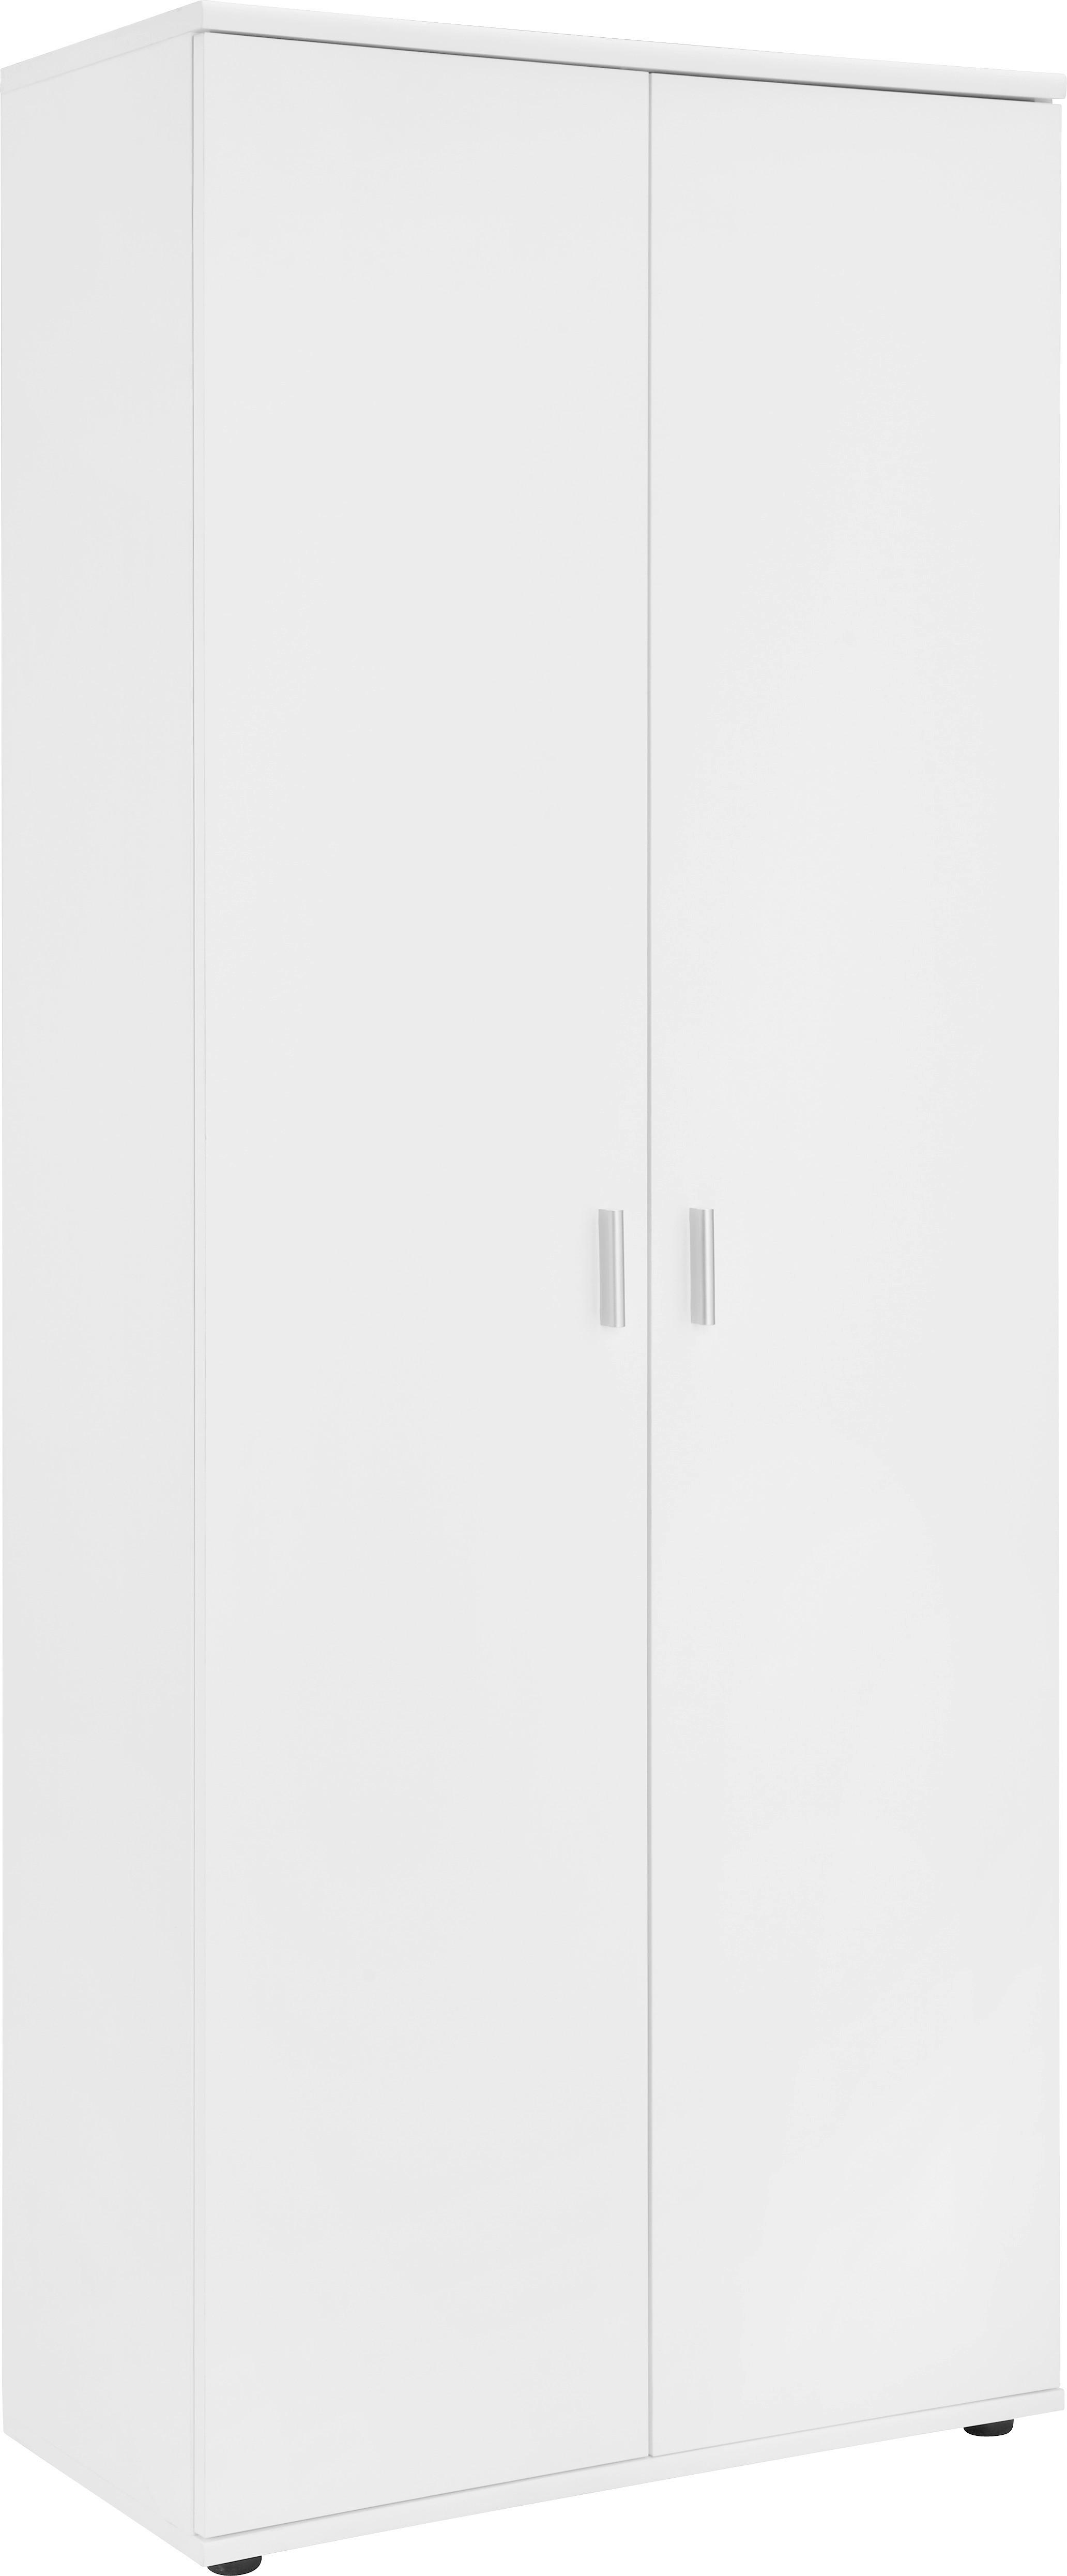 SCHUHSCHRANK Weiß  - Silberfarben/Weiß, Design, Holzwerkstoff/Kunststoff (69/176/34cm)